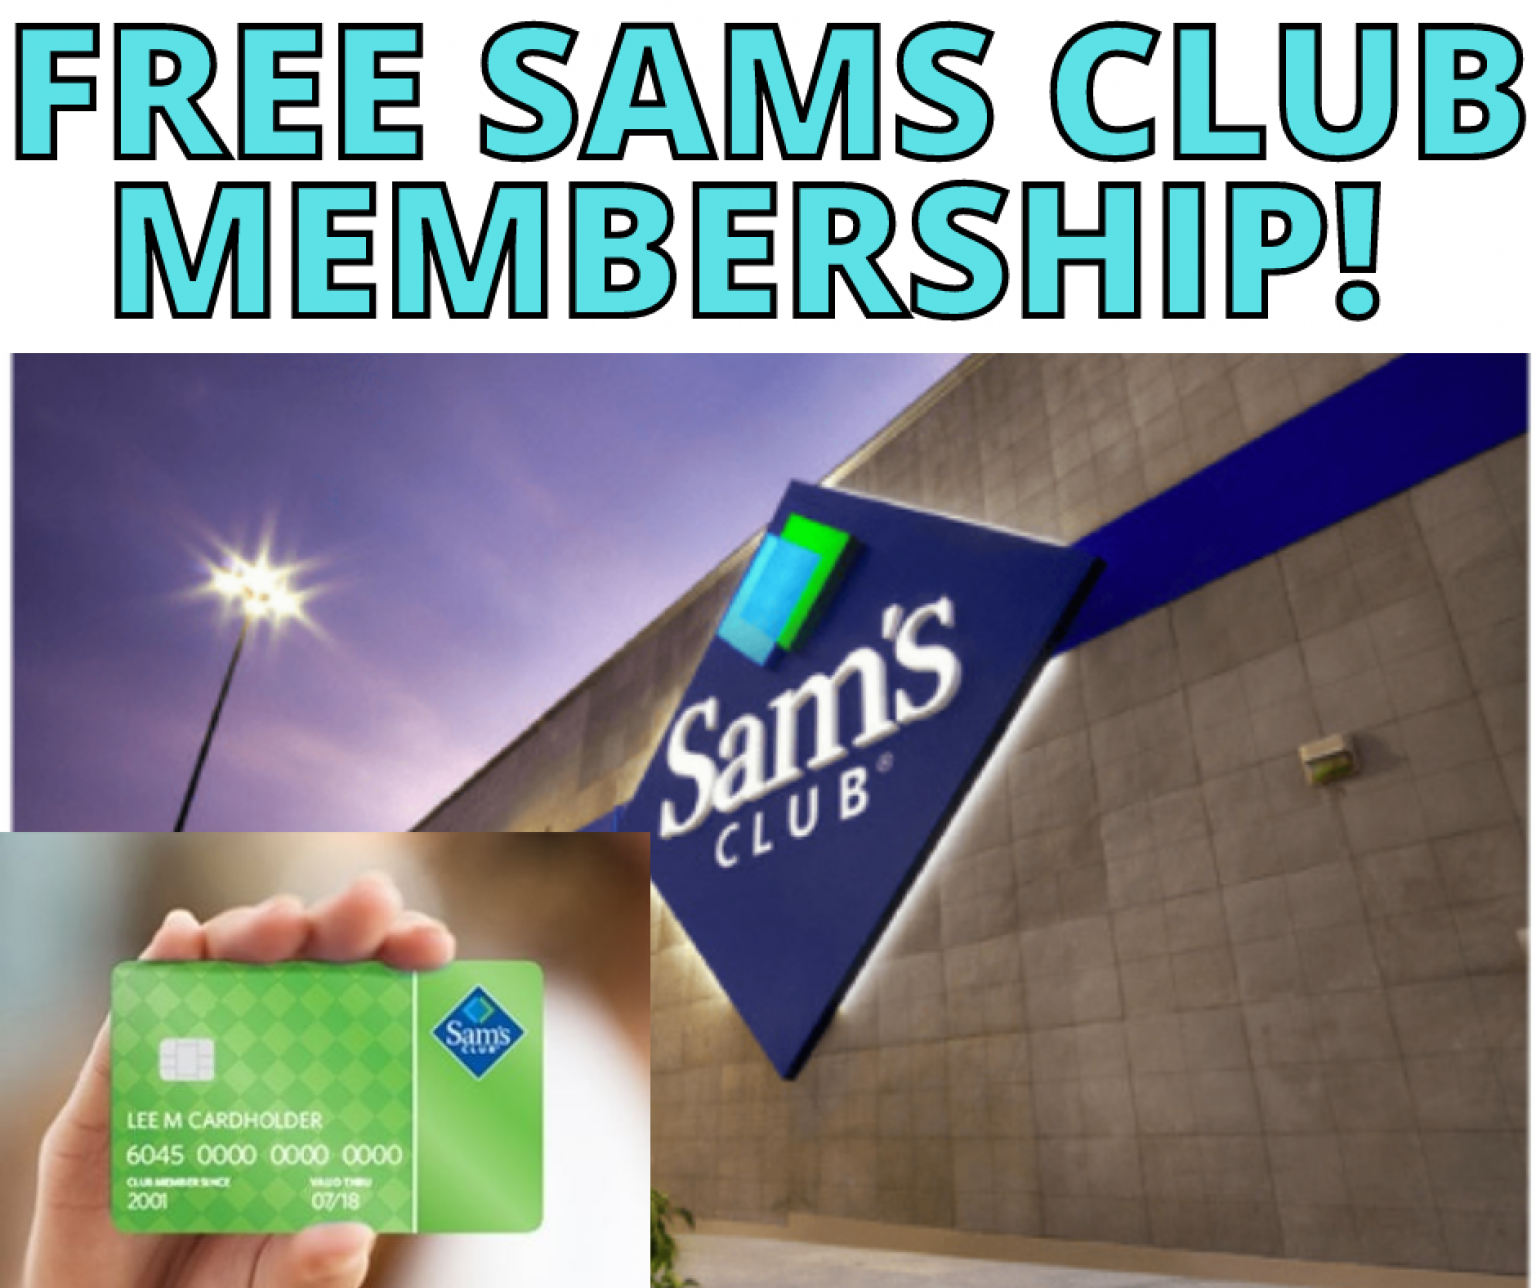 Sam's Club FREE MEMBERSHIP! 45 OFF 45!!